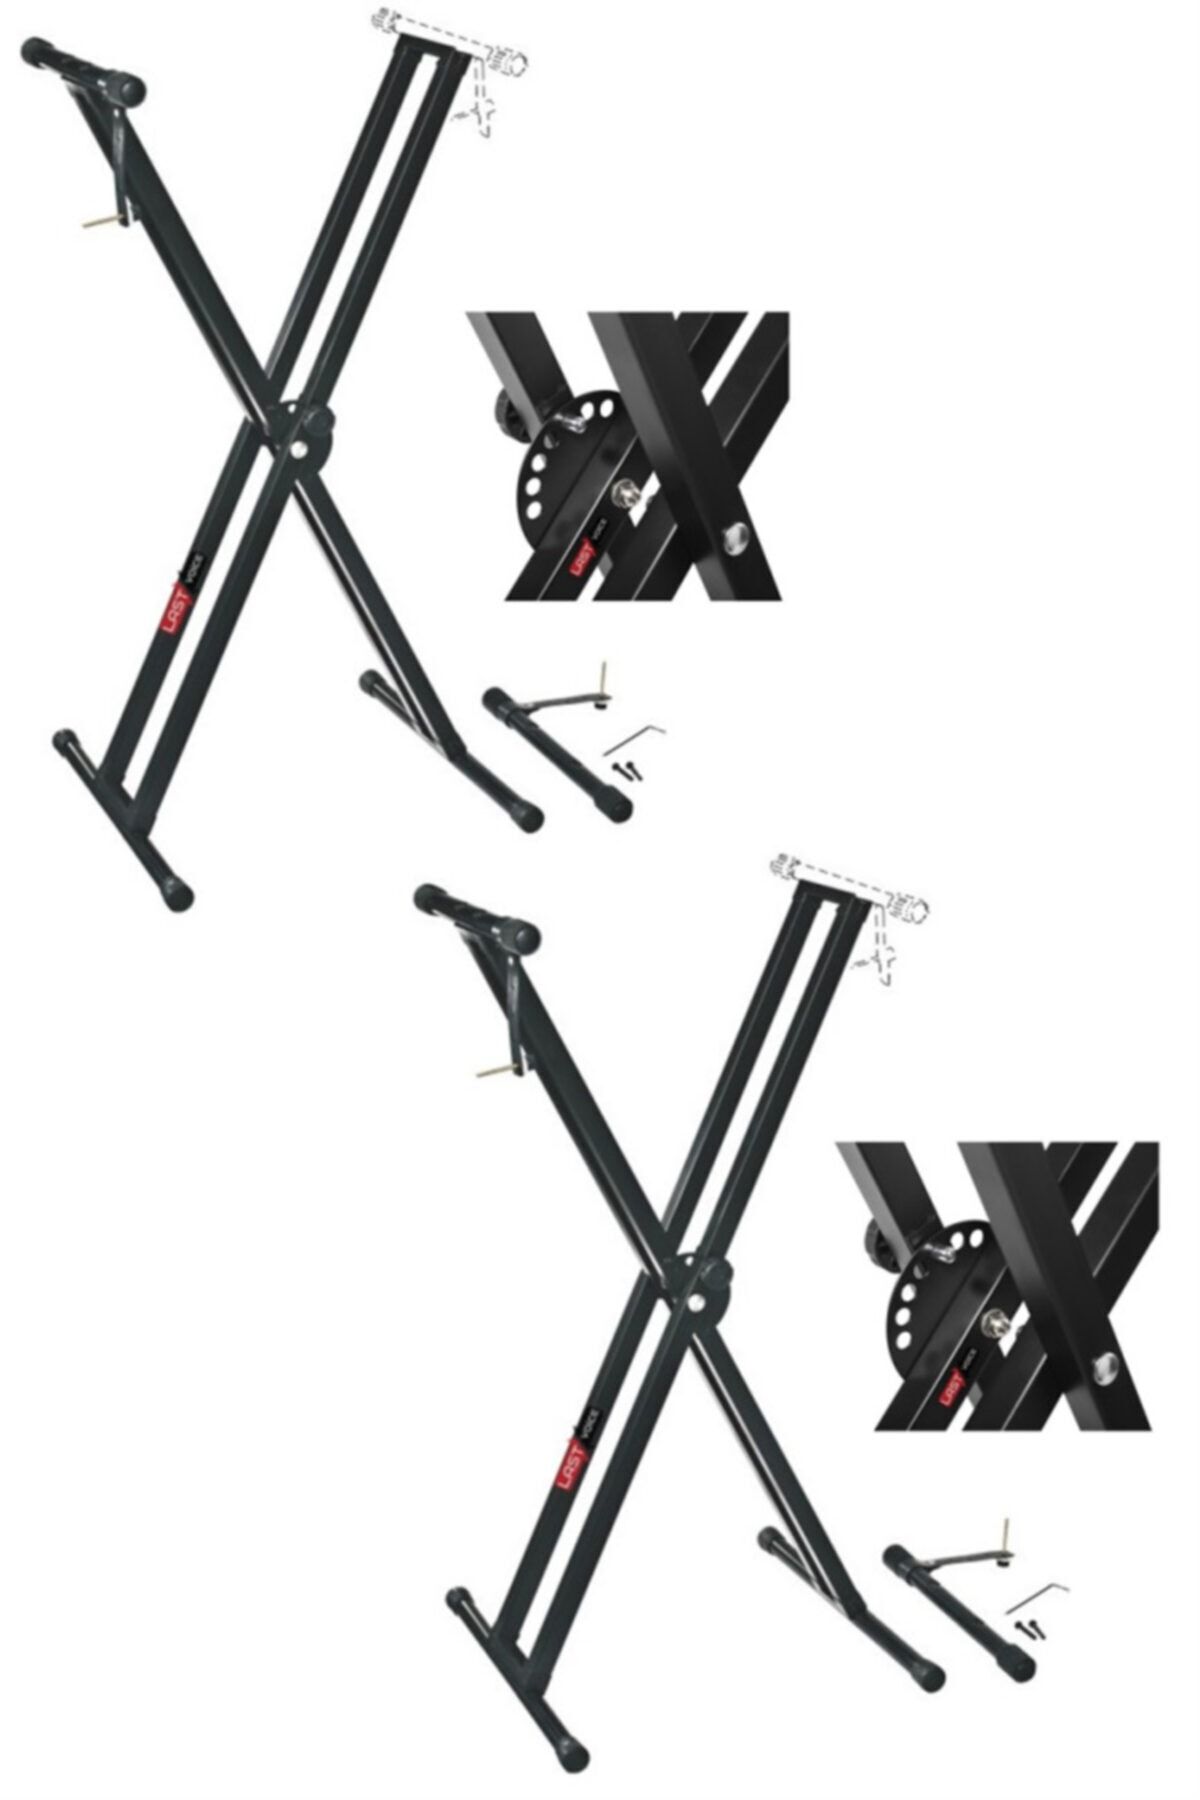 Lastvoice Ks-04dx 2li Set Çift Profilli 7 Kademeli Üst Segmen Org Sehpası Standı Ayağı (sabitleme Ka